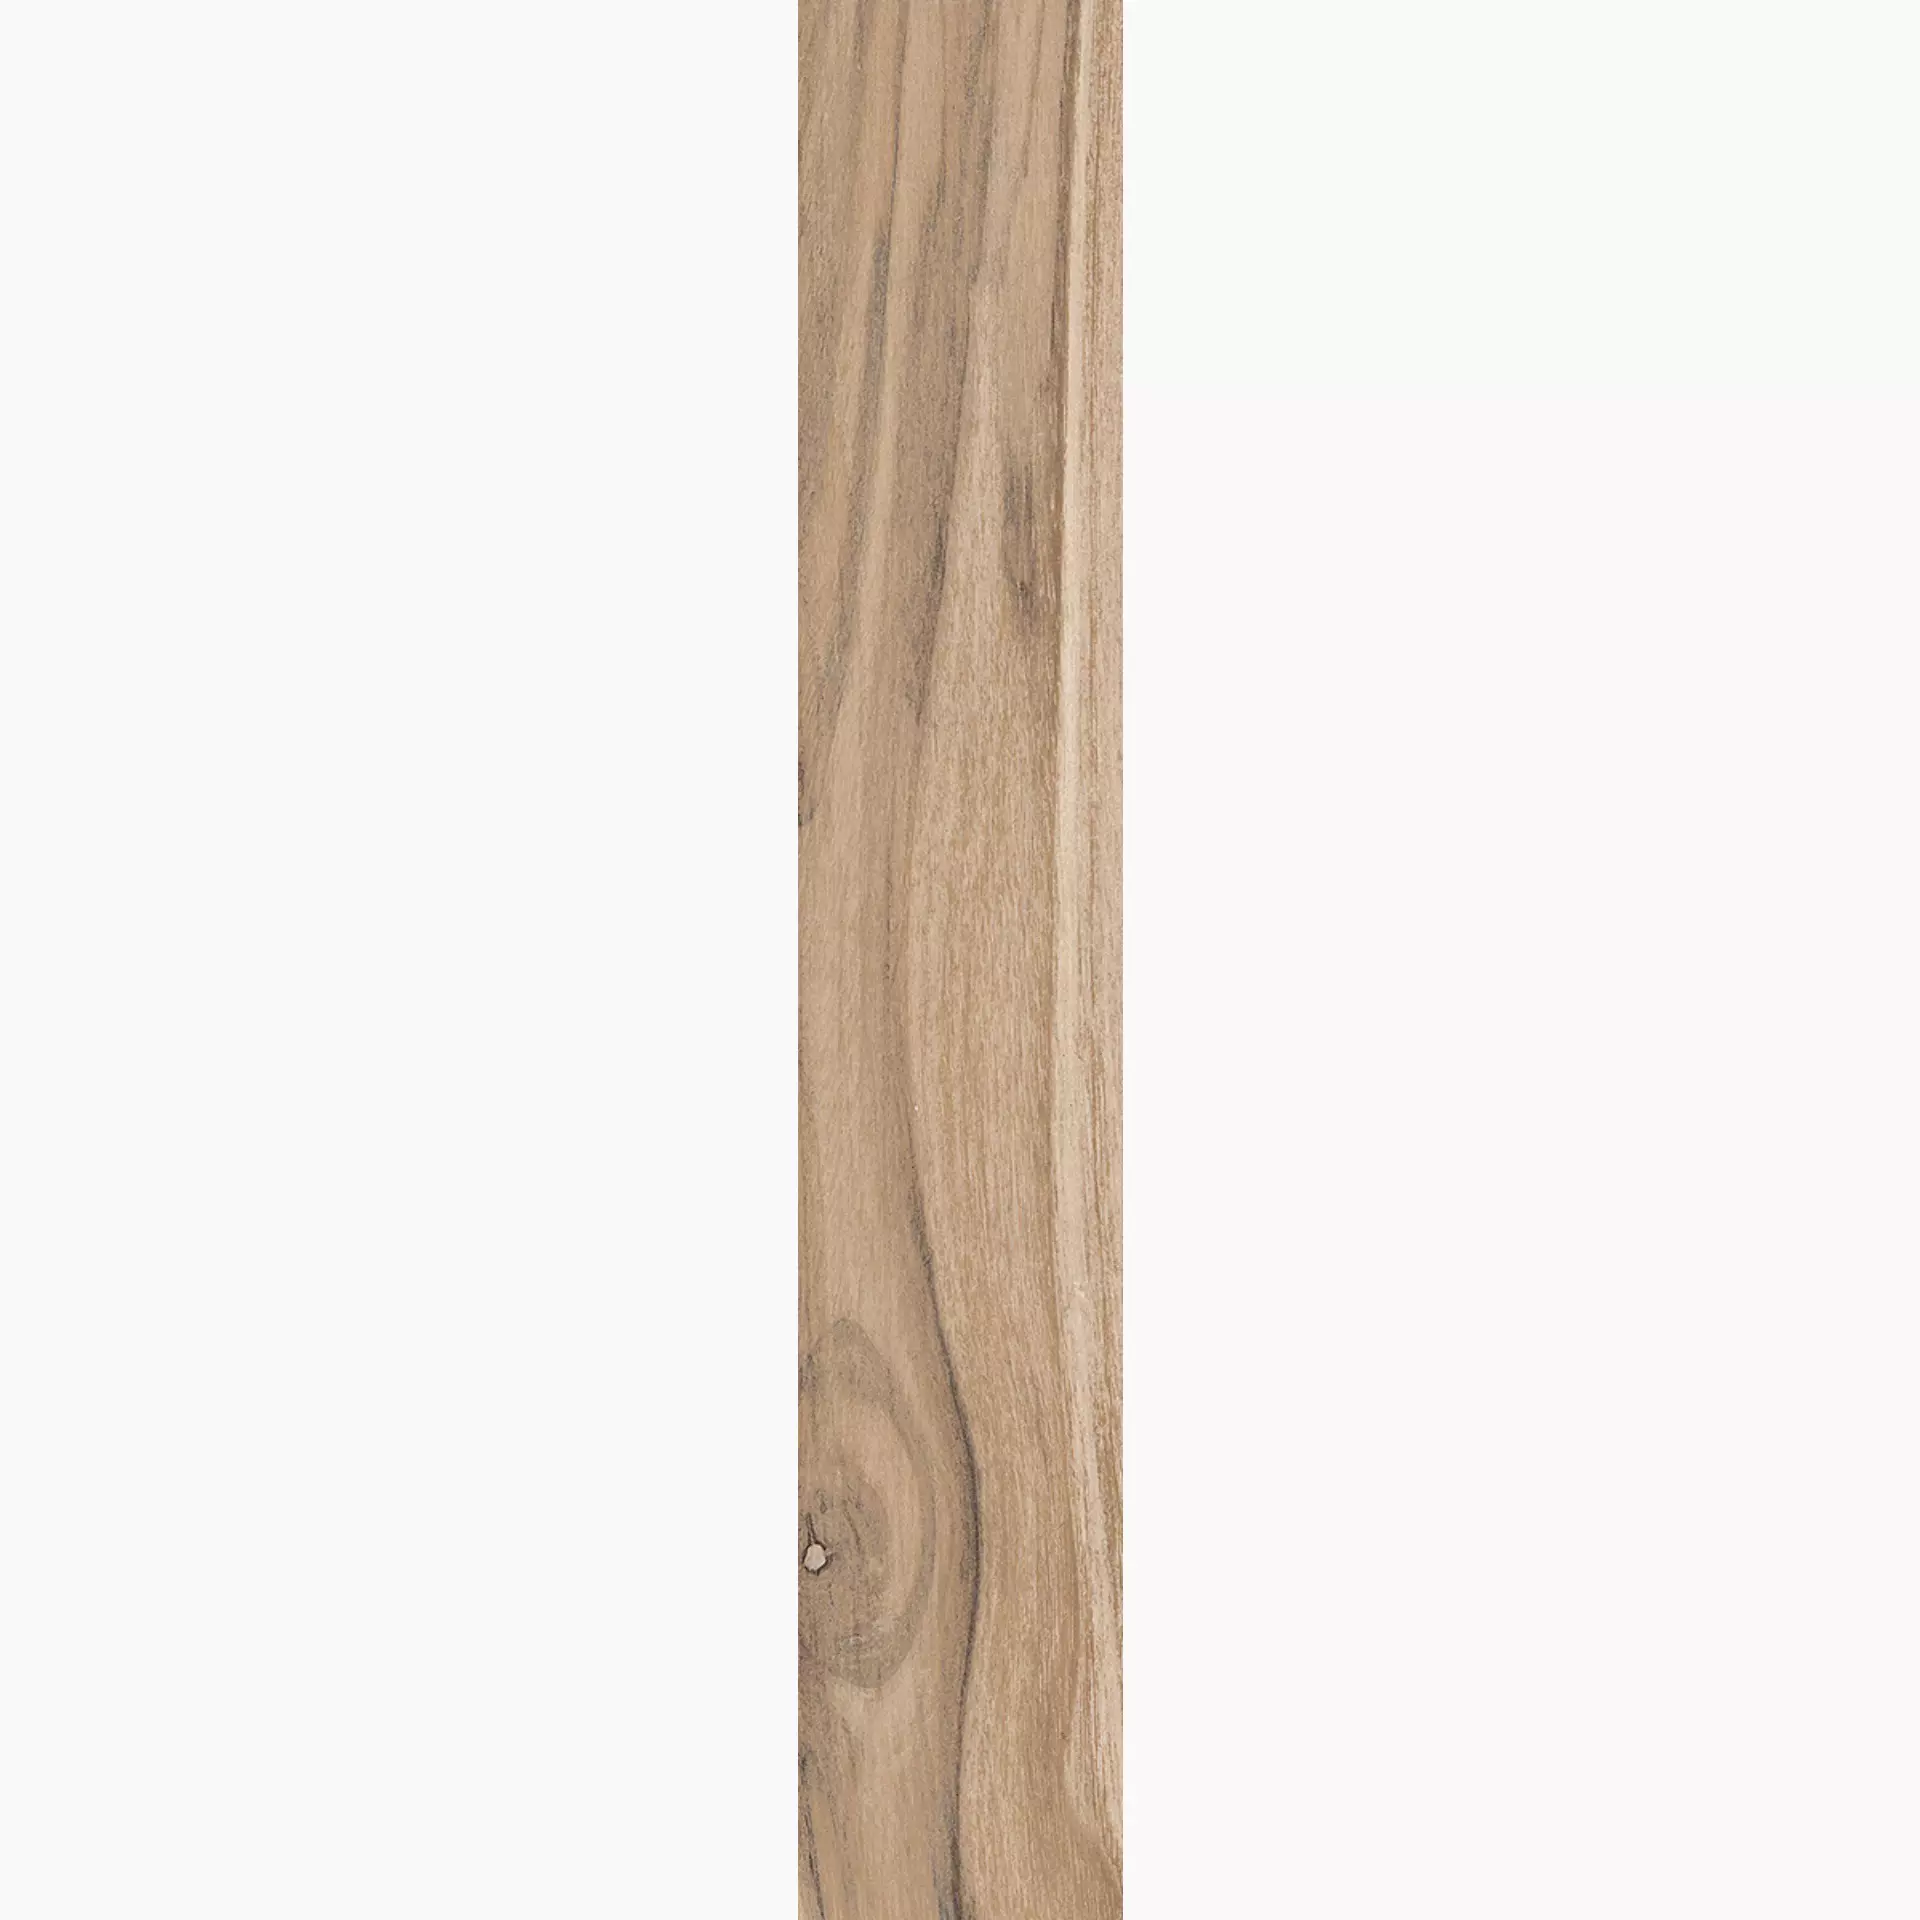 Rondine Living Marrone Naturale J86349 7,5x45cm 8,5mm